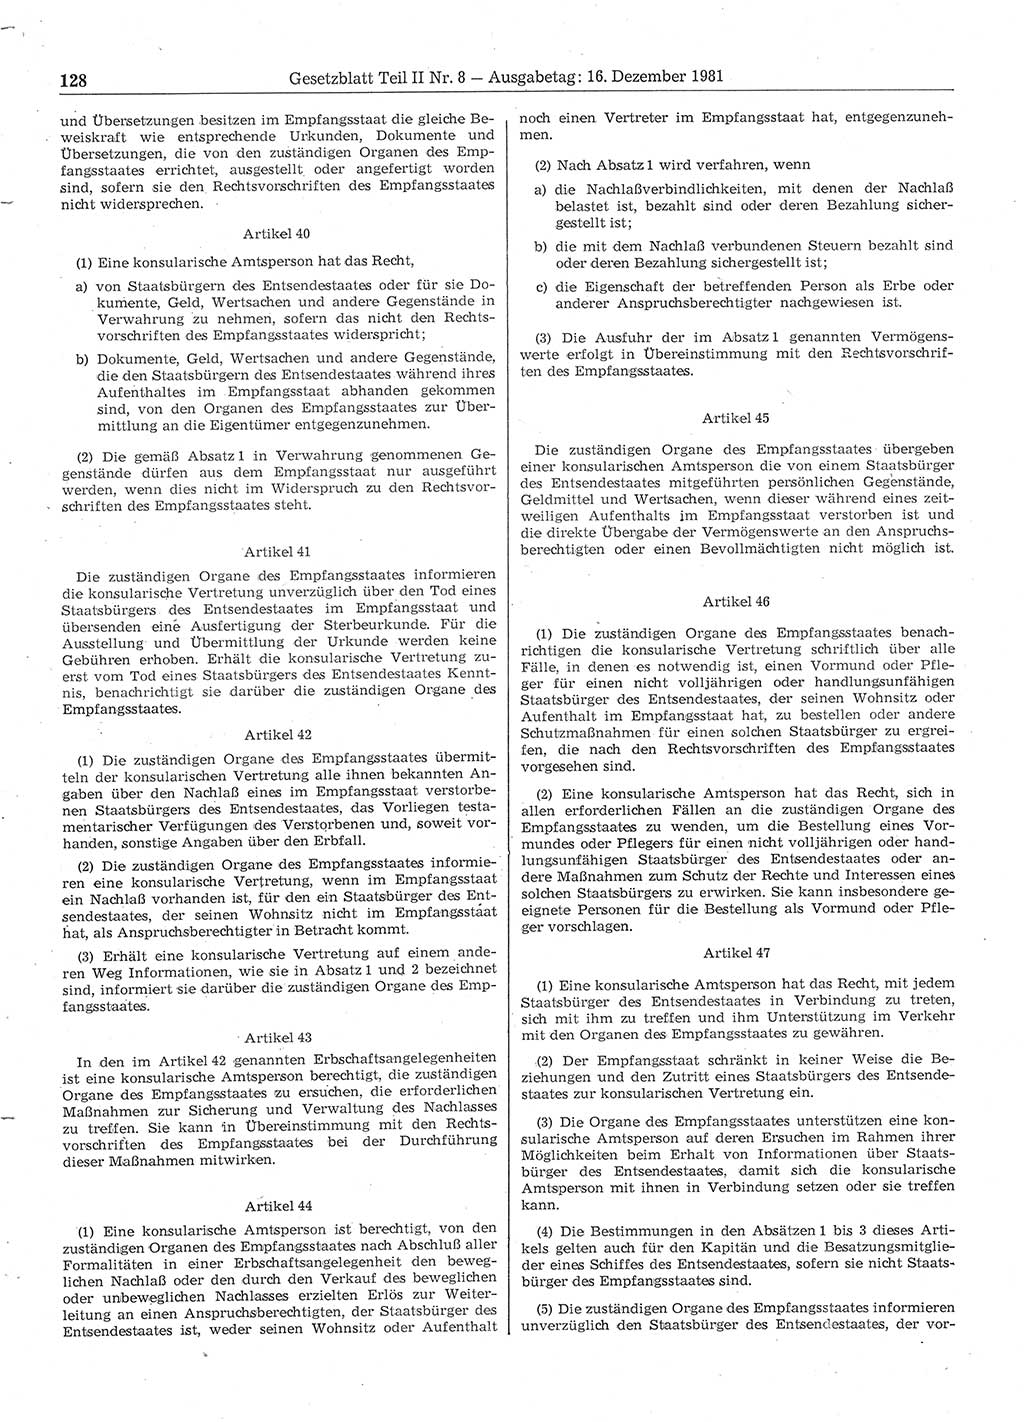 Gesetzblatt (GBl.) der Deutschen Demokratischen Republik (DDR) Teil ⅠⅠ 1981, Seite 128 (GBl. DDR ⅠⅠ 1981, S. 128)